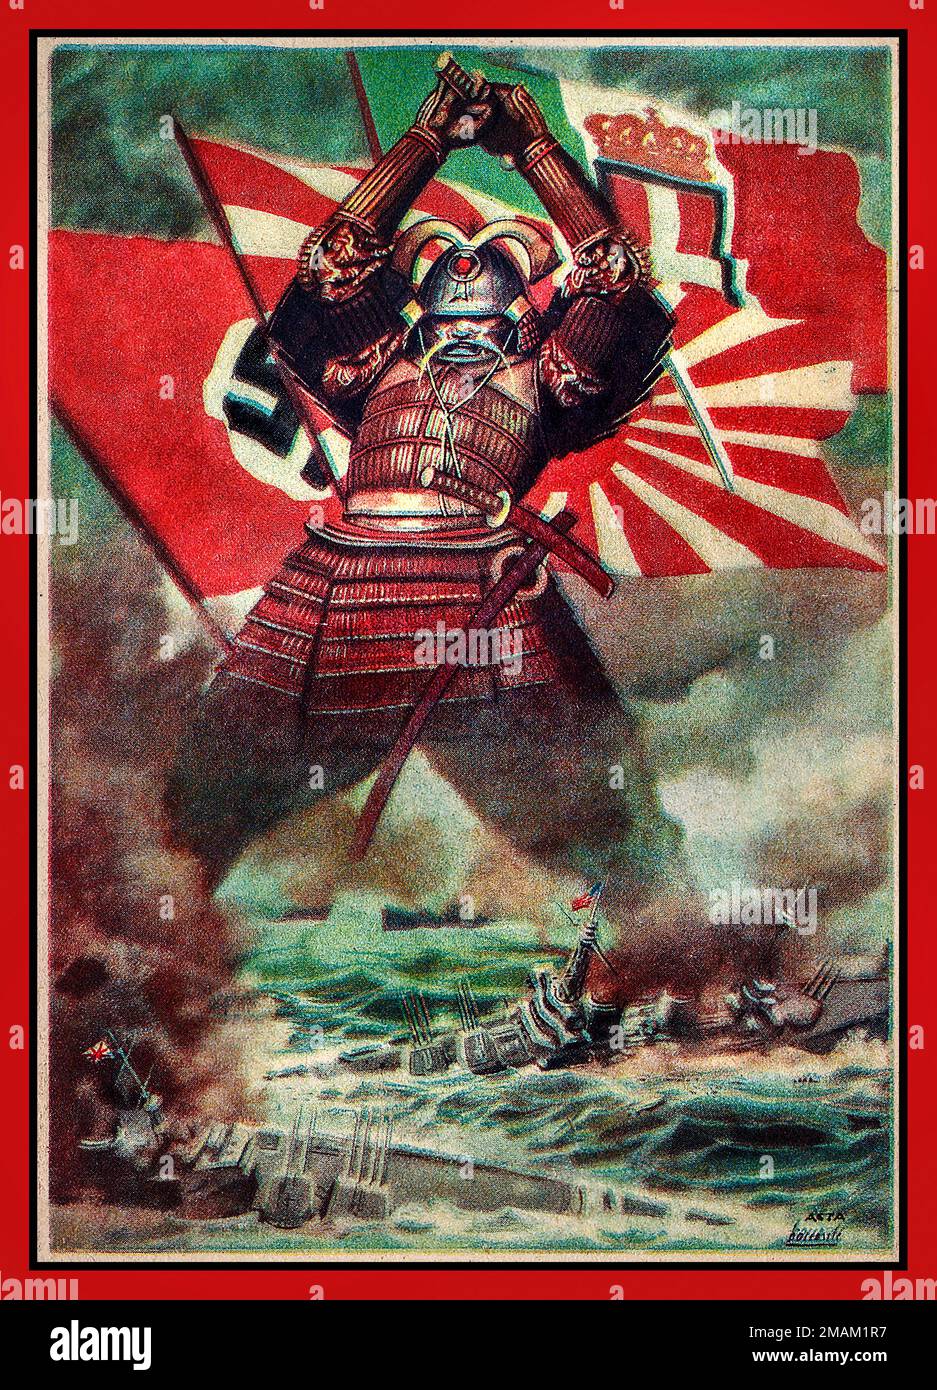 WW2 propagande des forces de l'axe japonaises/japonaises/allemandes en 1943 : un gigantesque guerrier japonais Samurai, soutenu par les forces de l'axe de l'Allemagne nazie, de l'Italie et des drapeaux japonais, détruisant les navires de guerre alliés avec son épée Seconde Guerre mondiale 1940s Banque D'Images